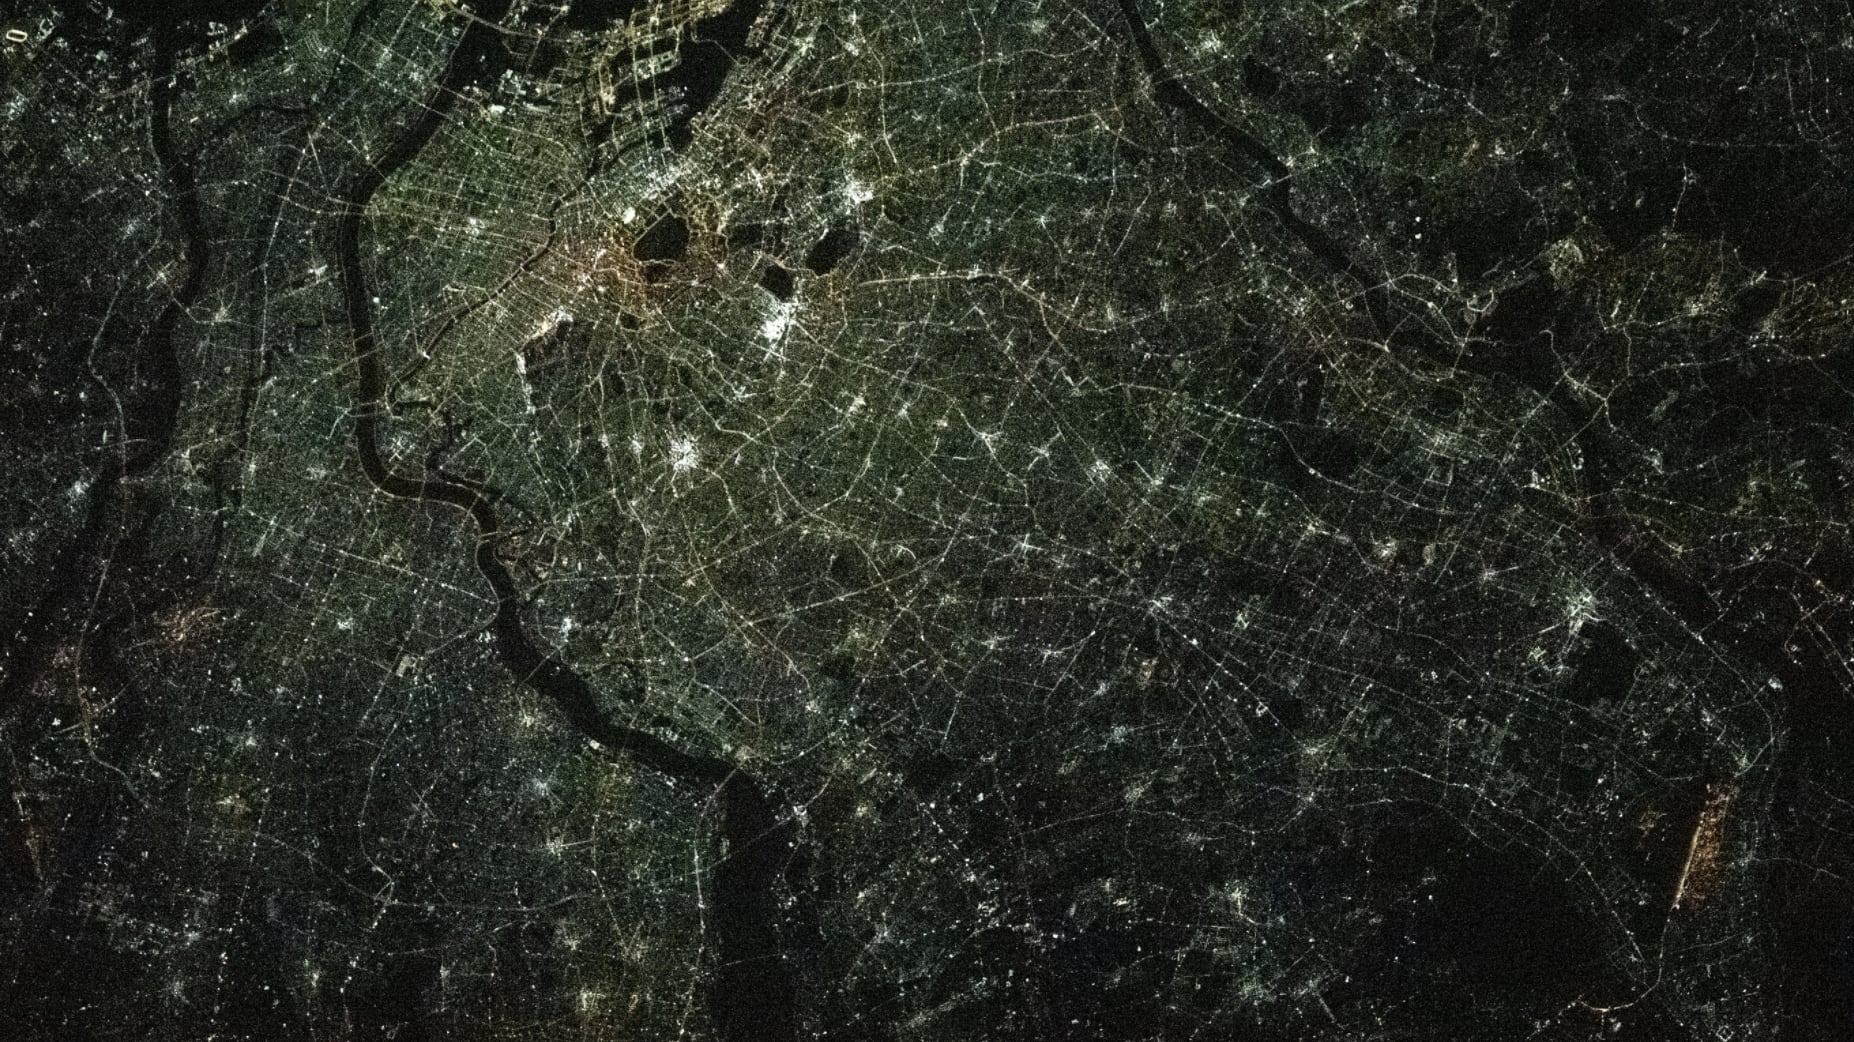 Astronauta da NASA registra impressionante imagem da Terra desde o espaço